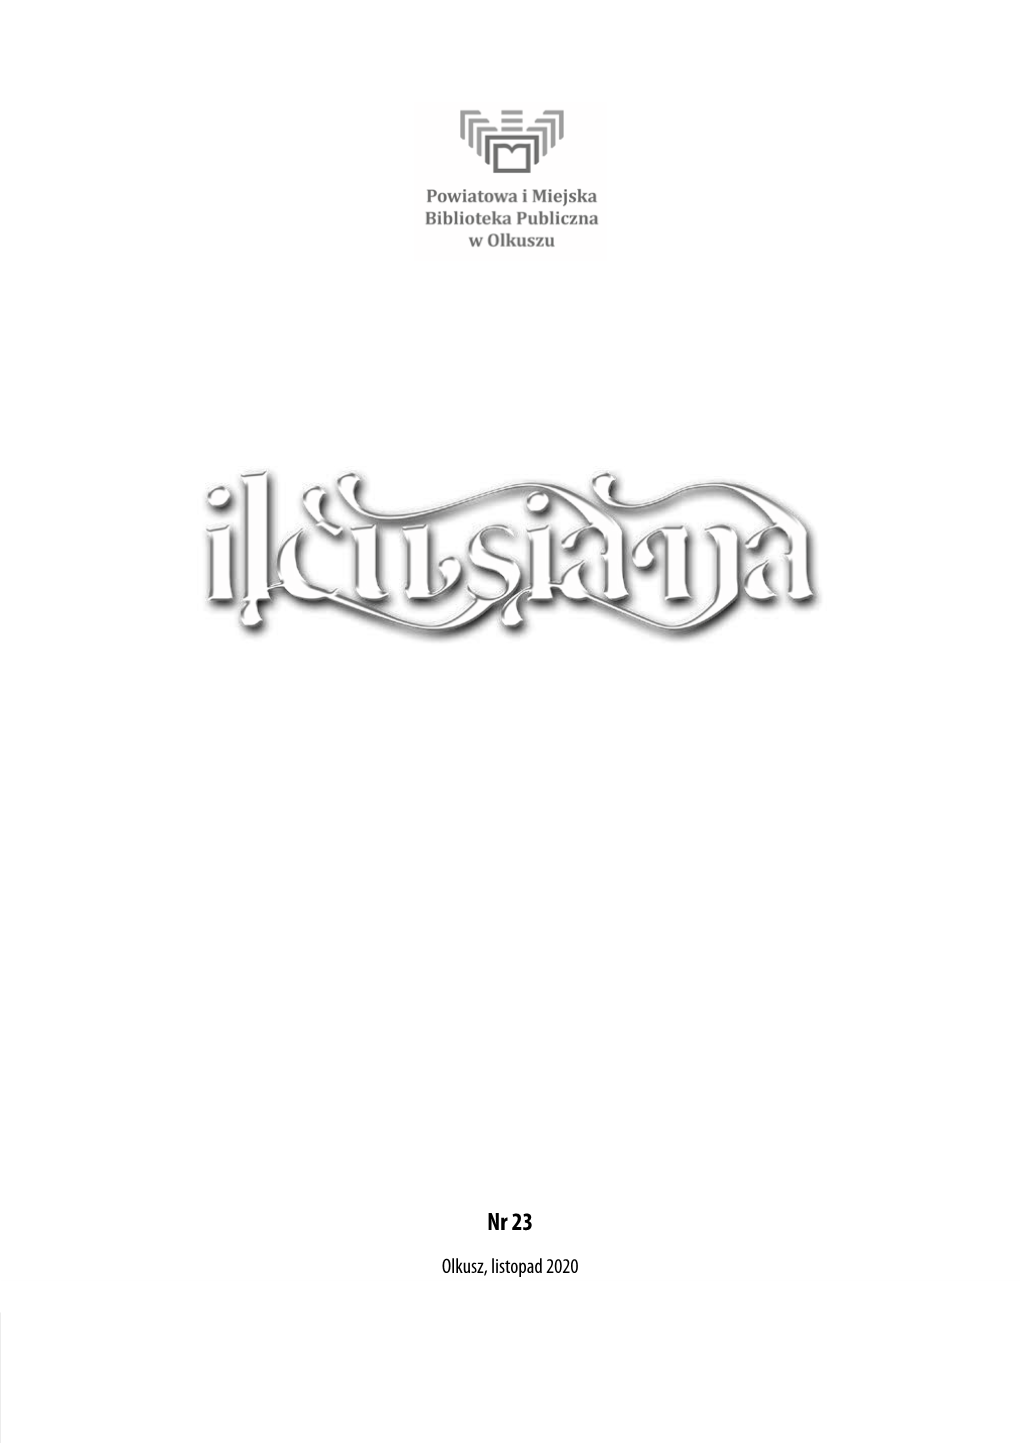 Ilcusiana Nr 23